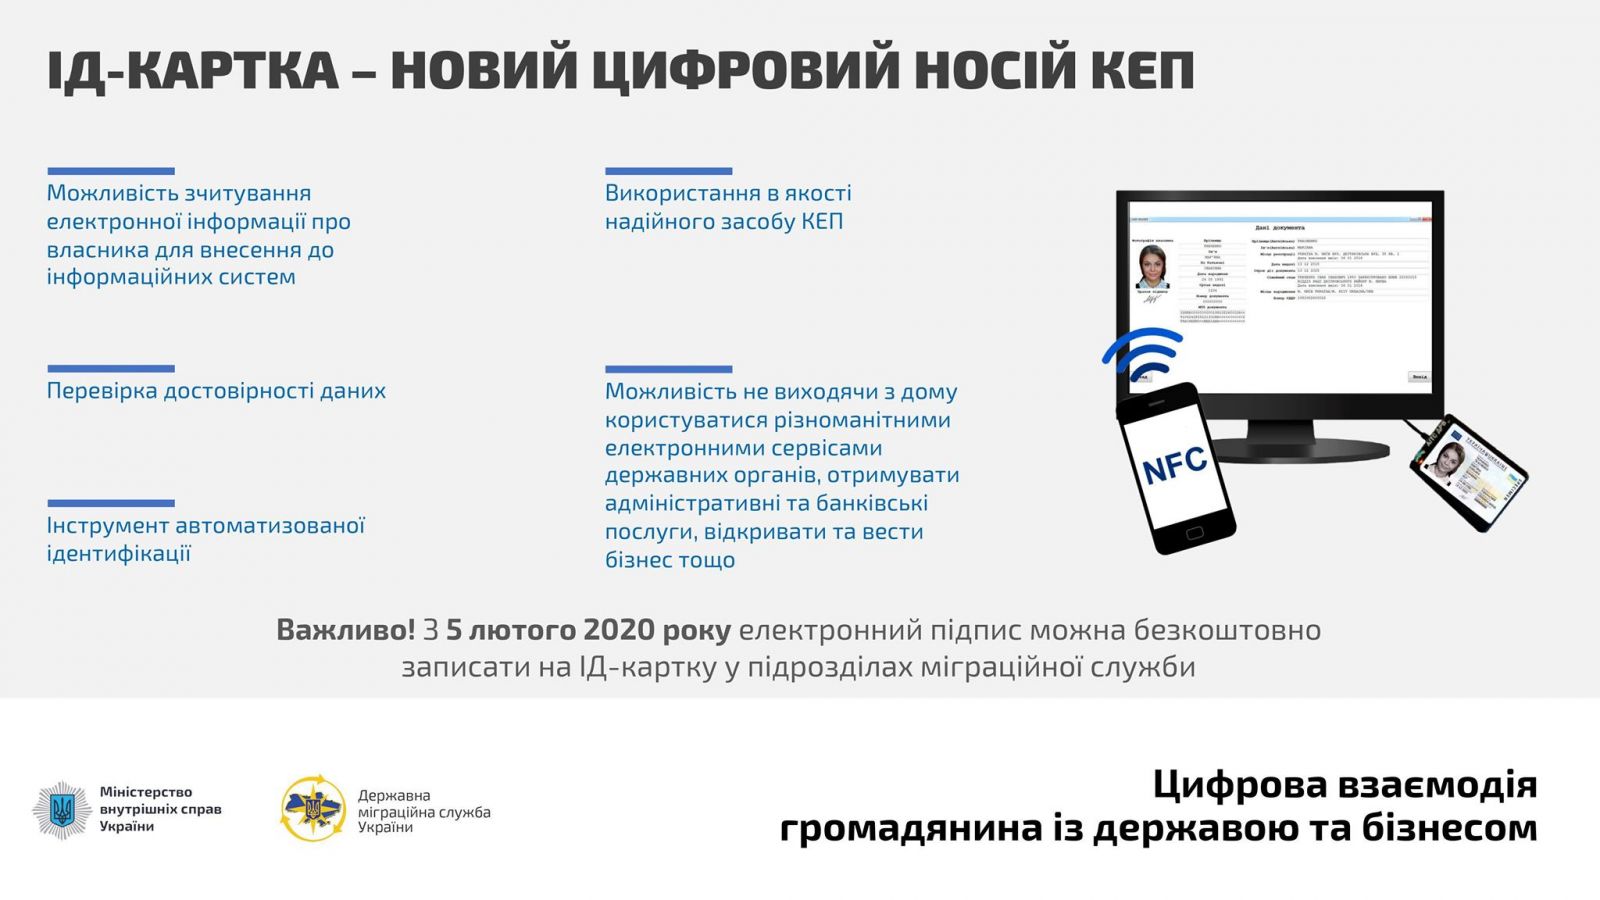 Електронний підпис на ID-карту відсьогодні можна отримати в Україні. Інфографіка: МВС